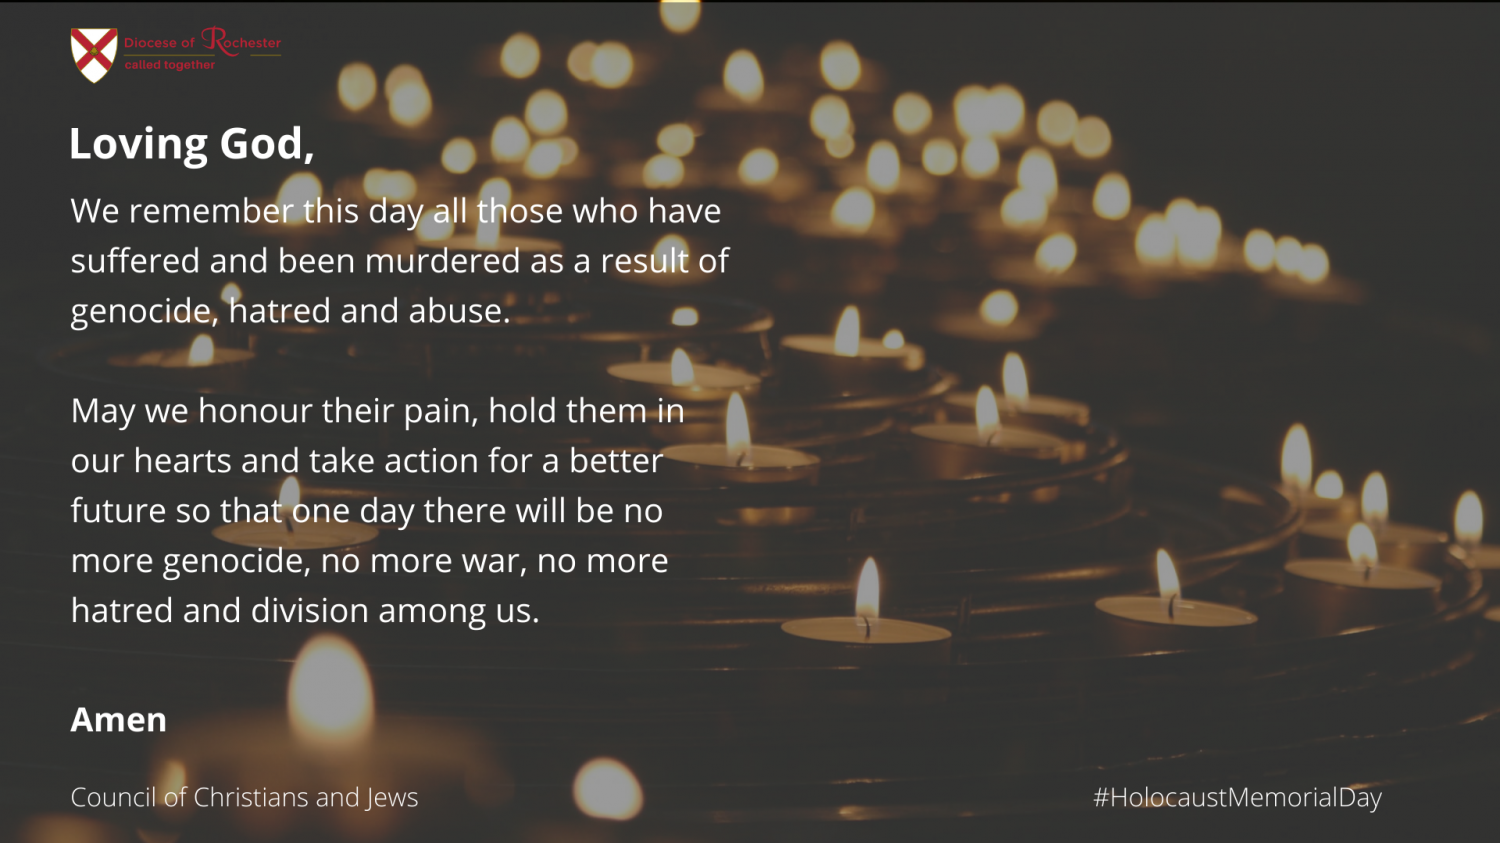 A prayer for Holocaust Memorial Day